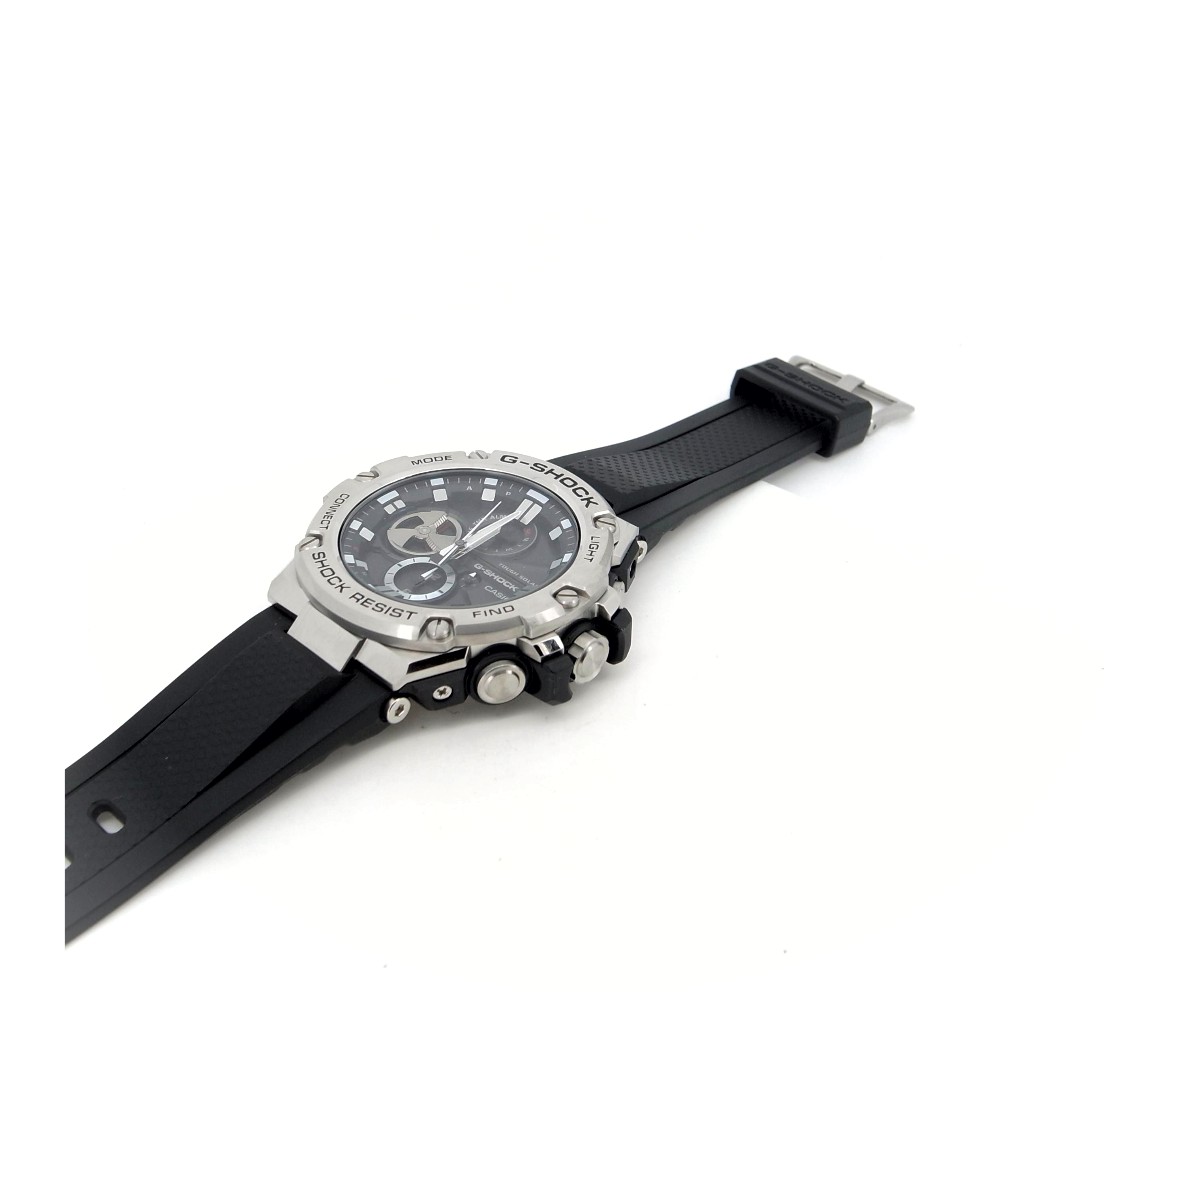 カシオ G-SHOCK G-STEEL GST-B100 メンズ腕時計 黒 ソーラー アナログ